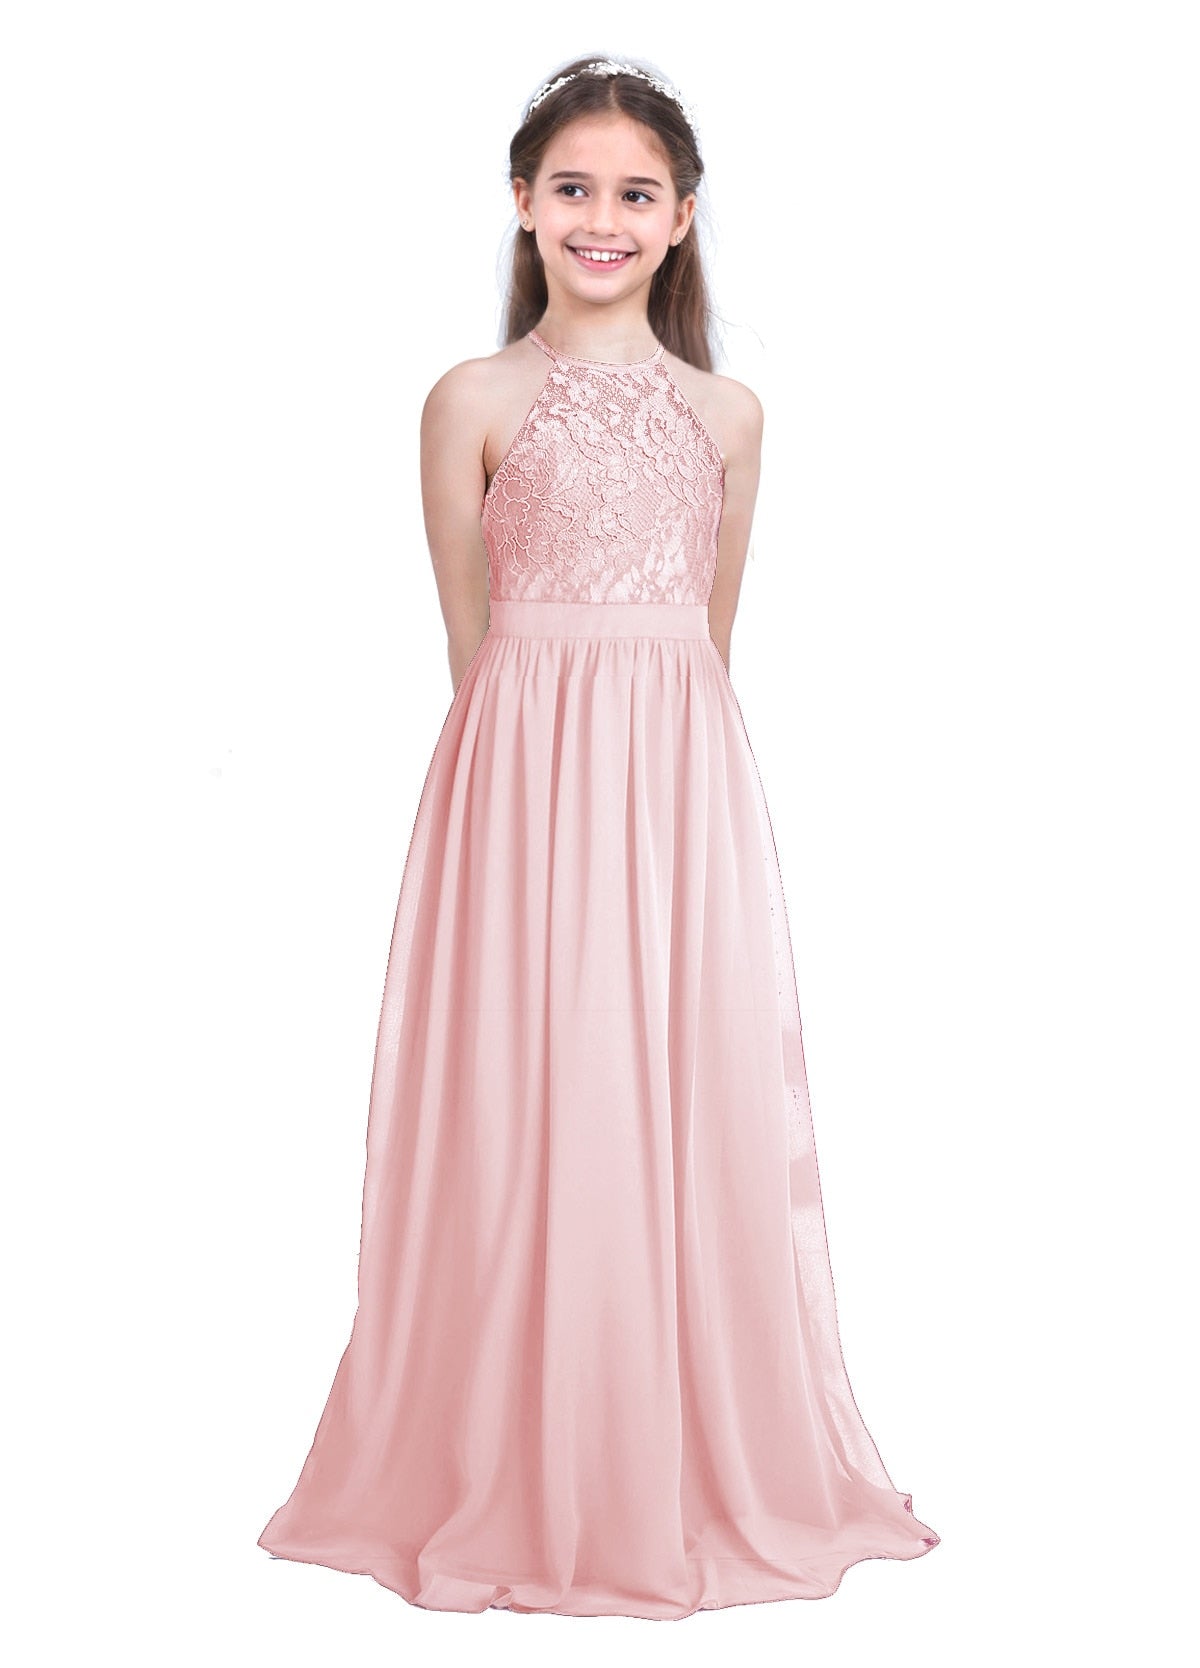 Elegant A-Line Halter Neck Floral Lace Dress